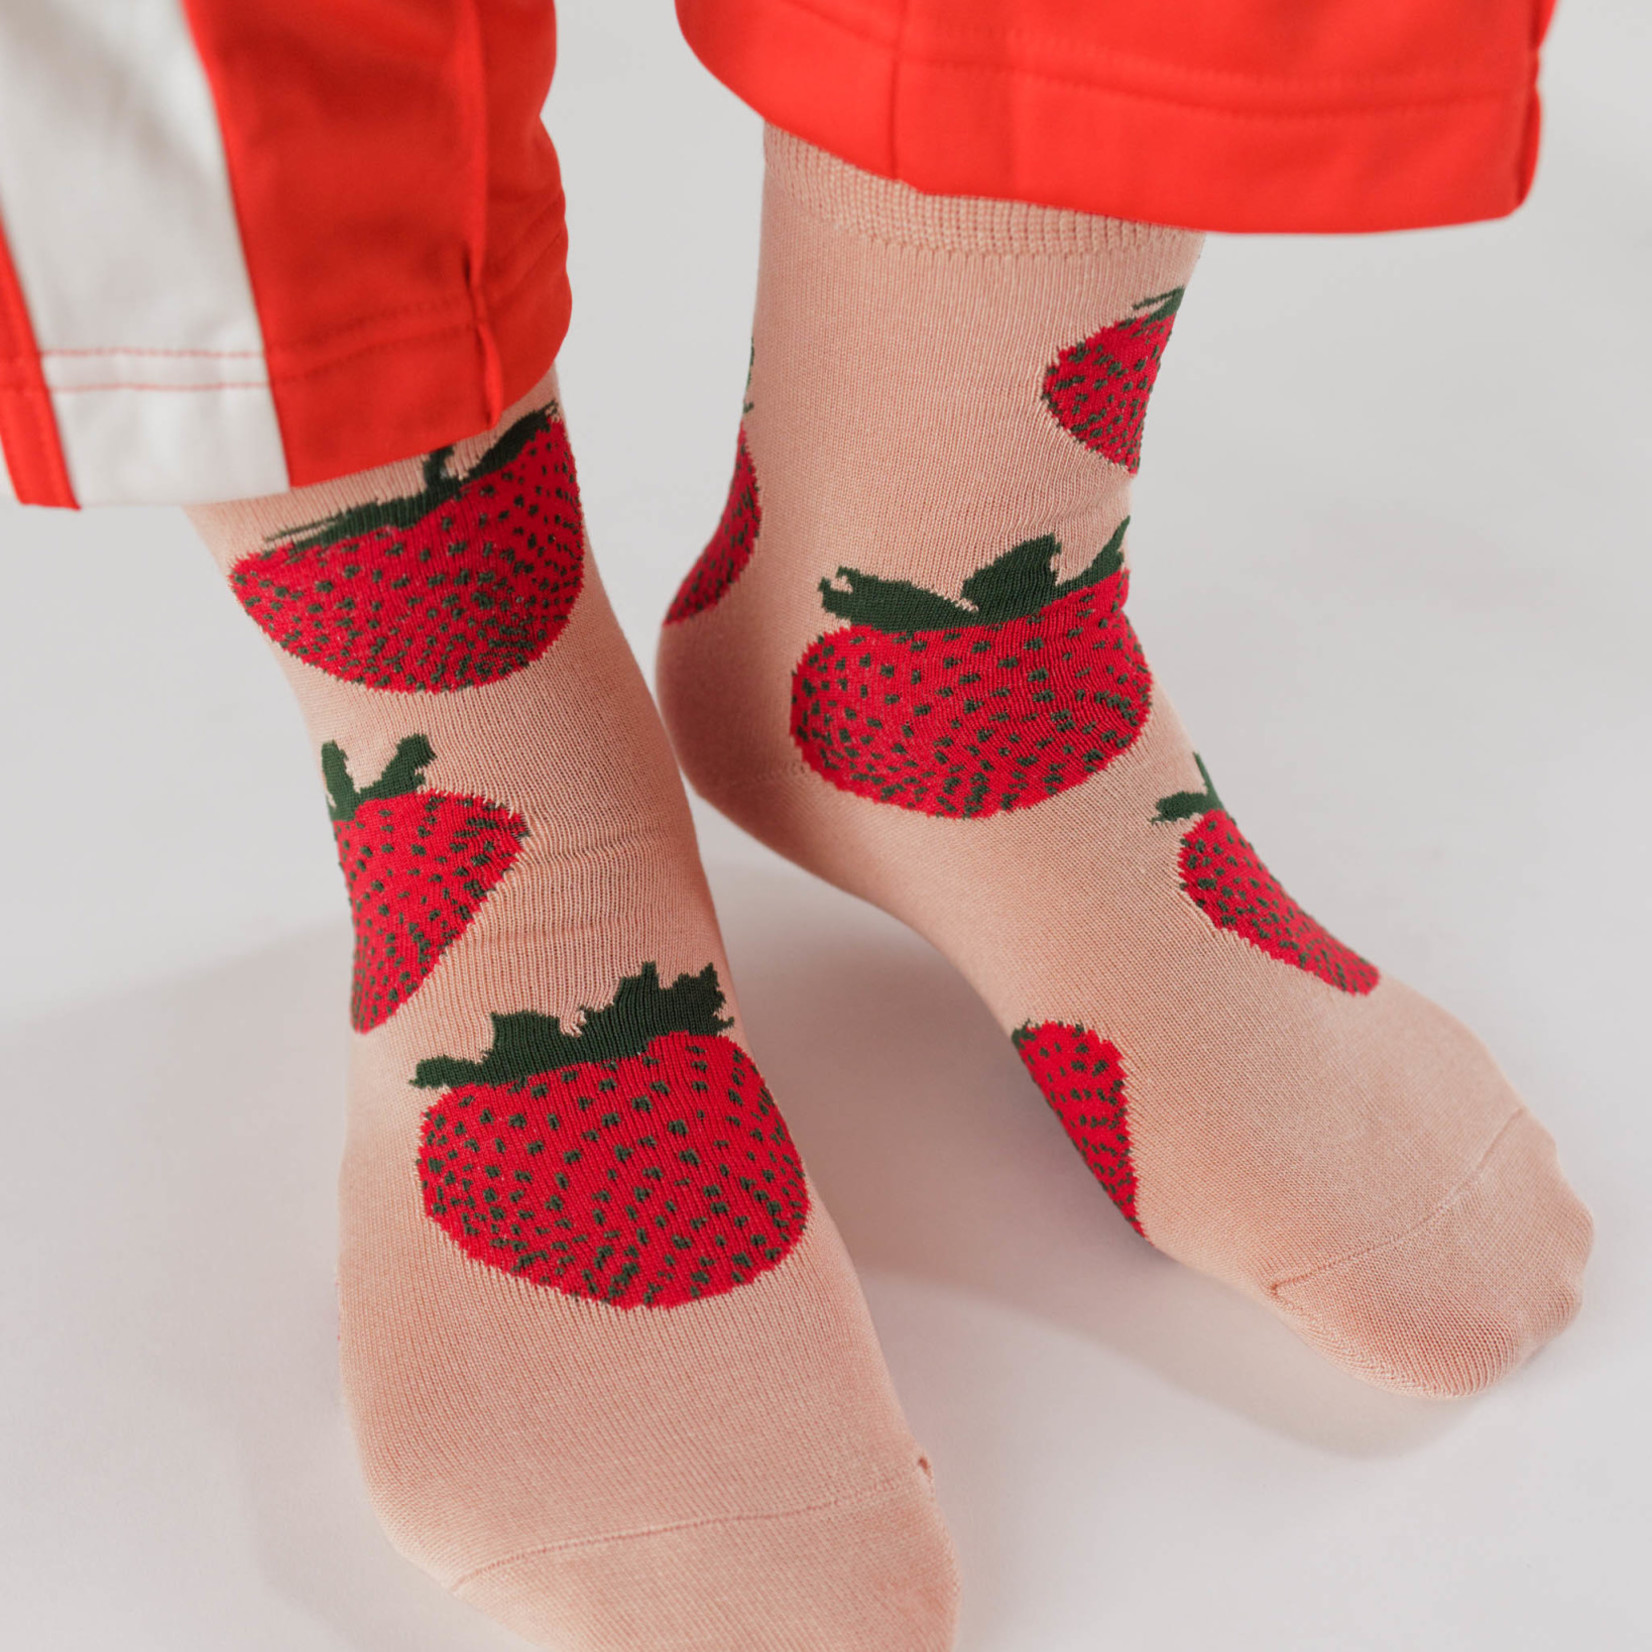 Baggu Baggu Crew Socks Strawberry